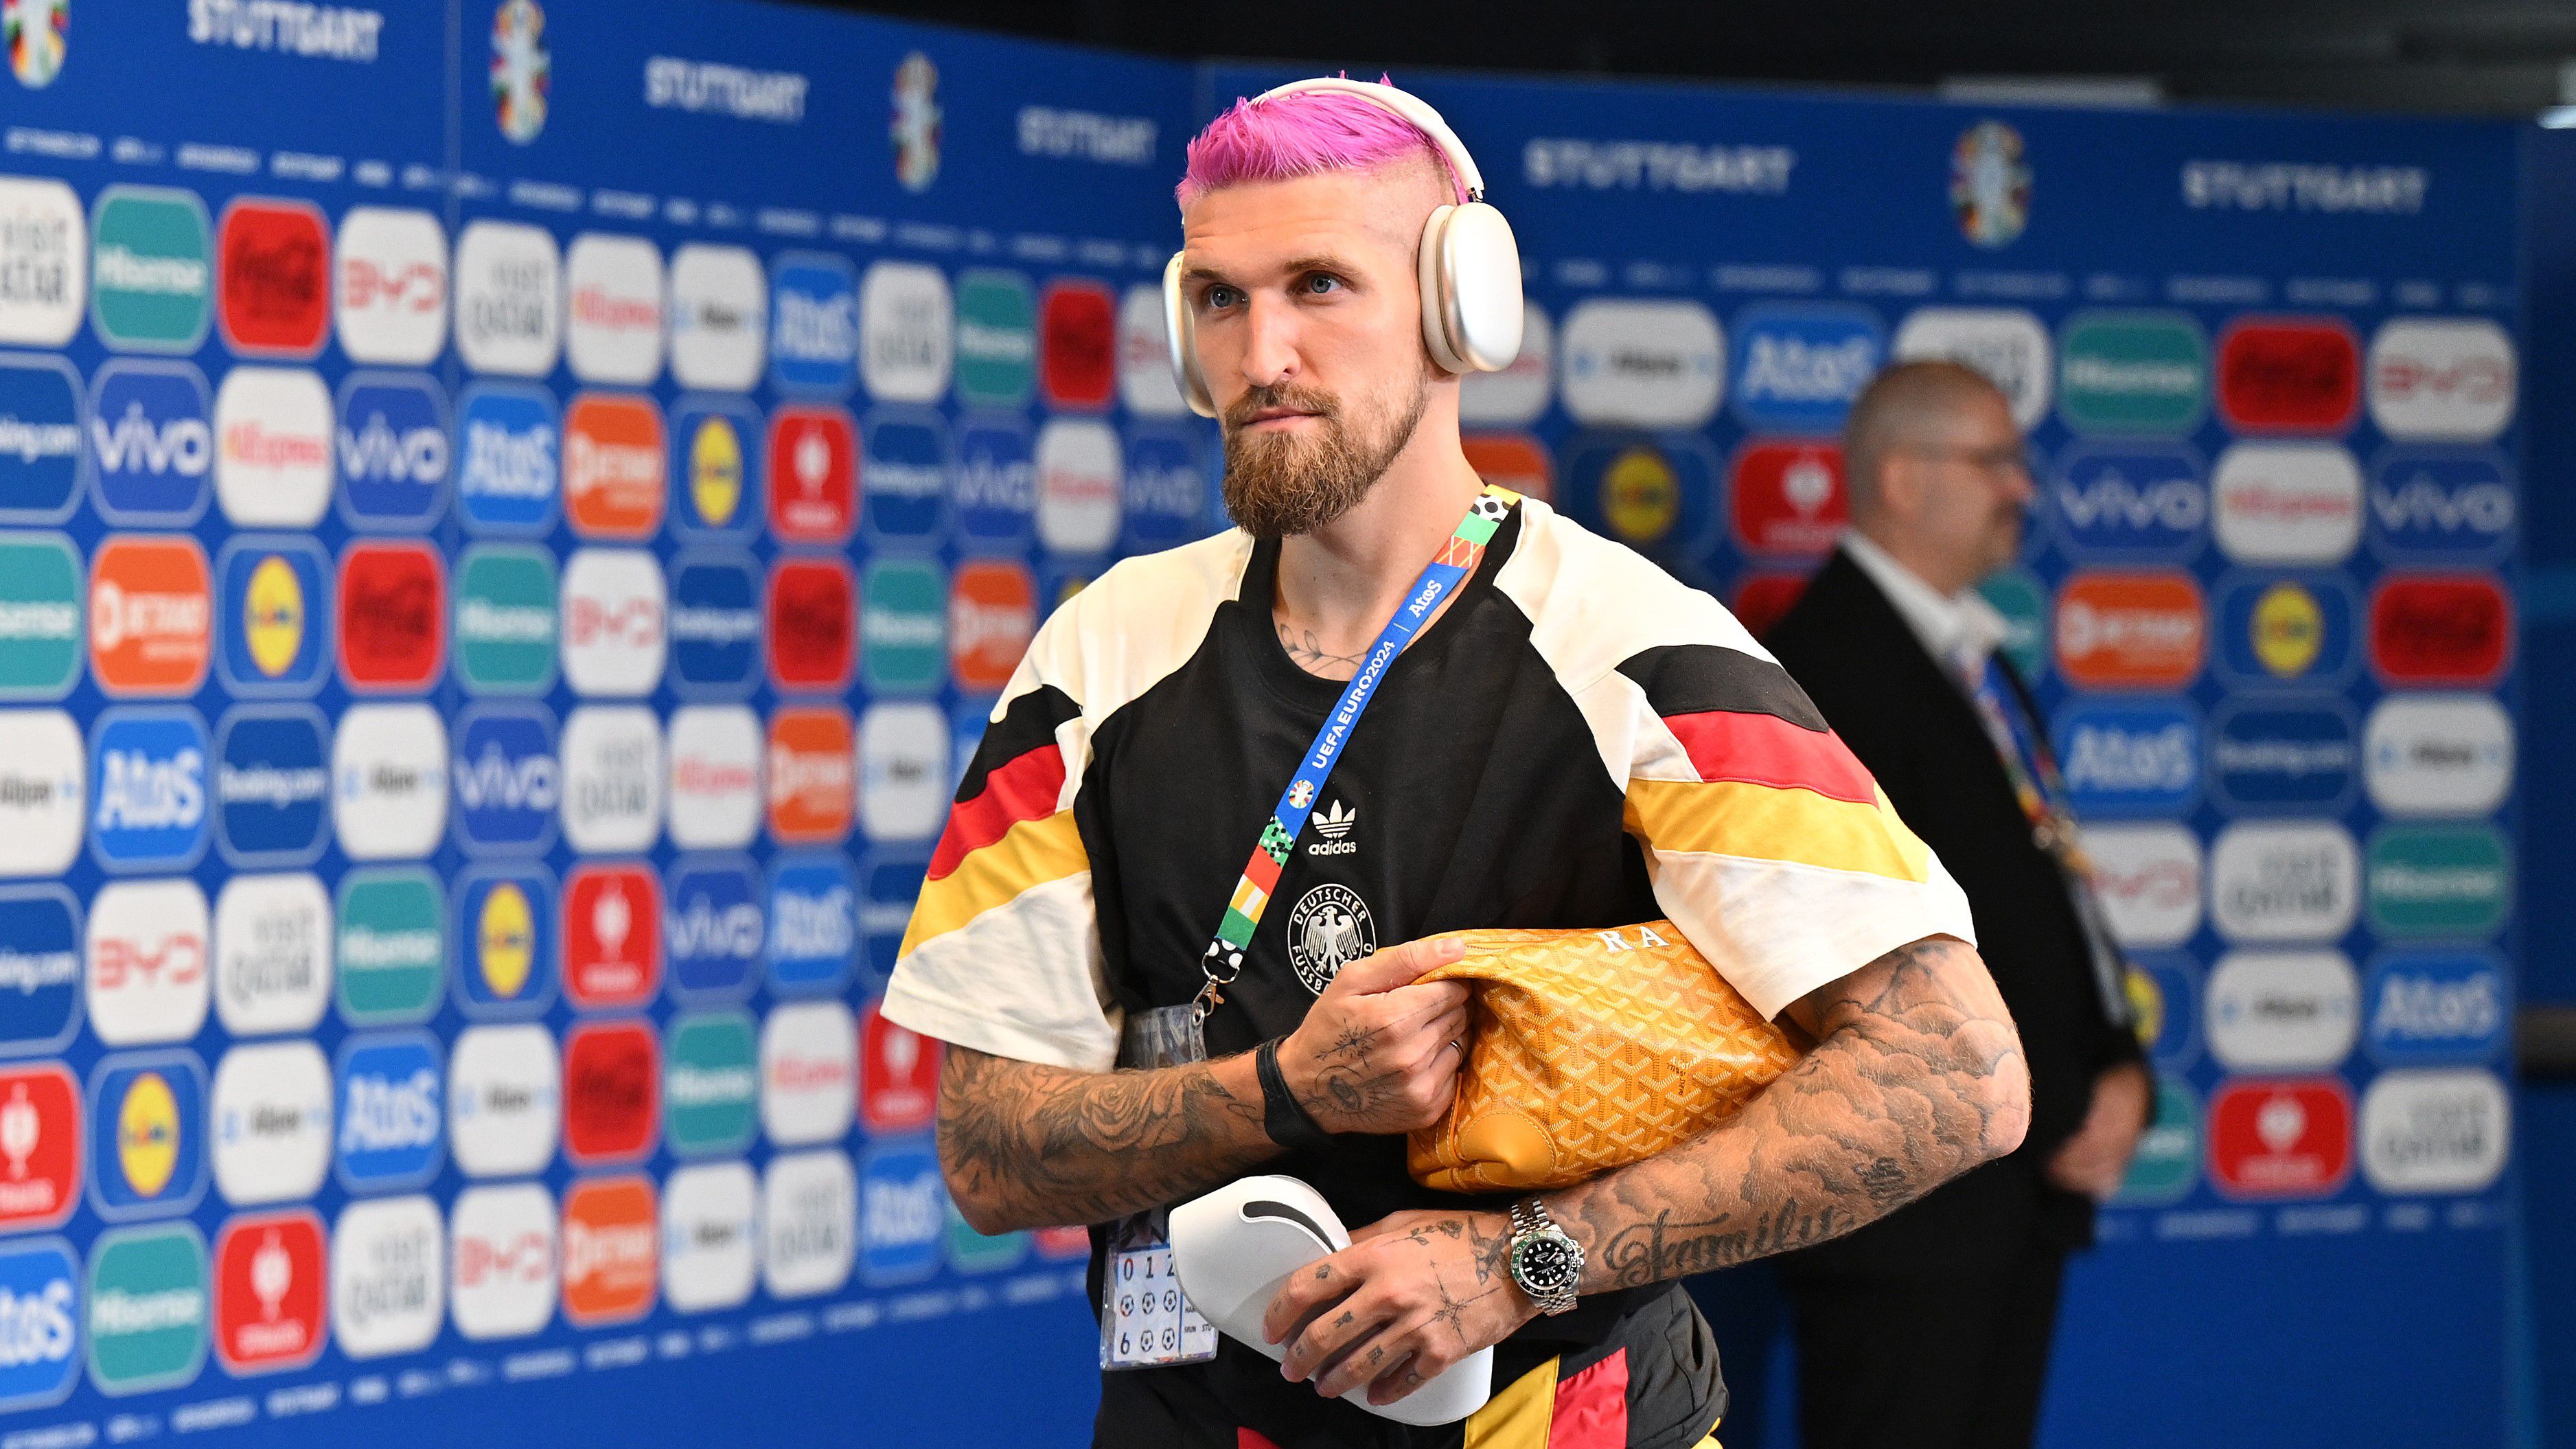 Menő vagy inkább röhejes? Rózsaszín hajat villantott a németek játékosa